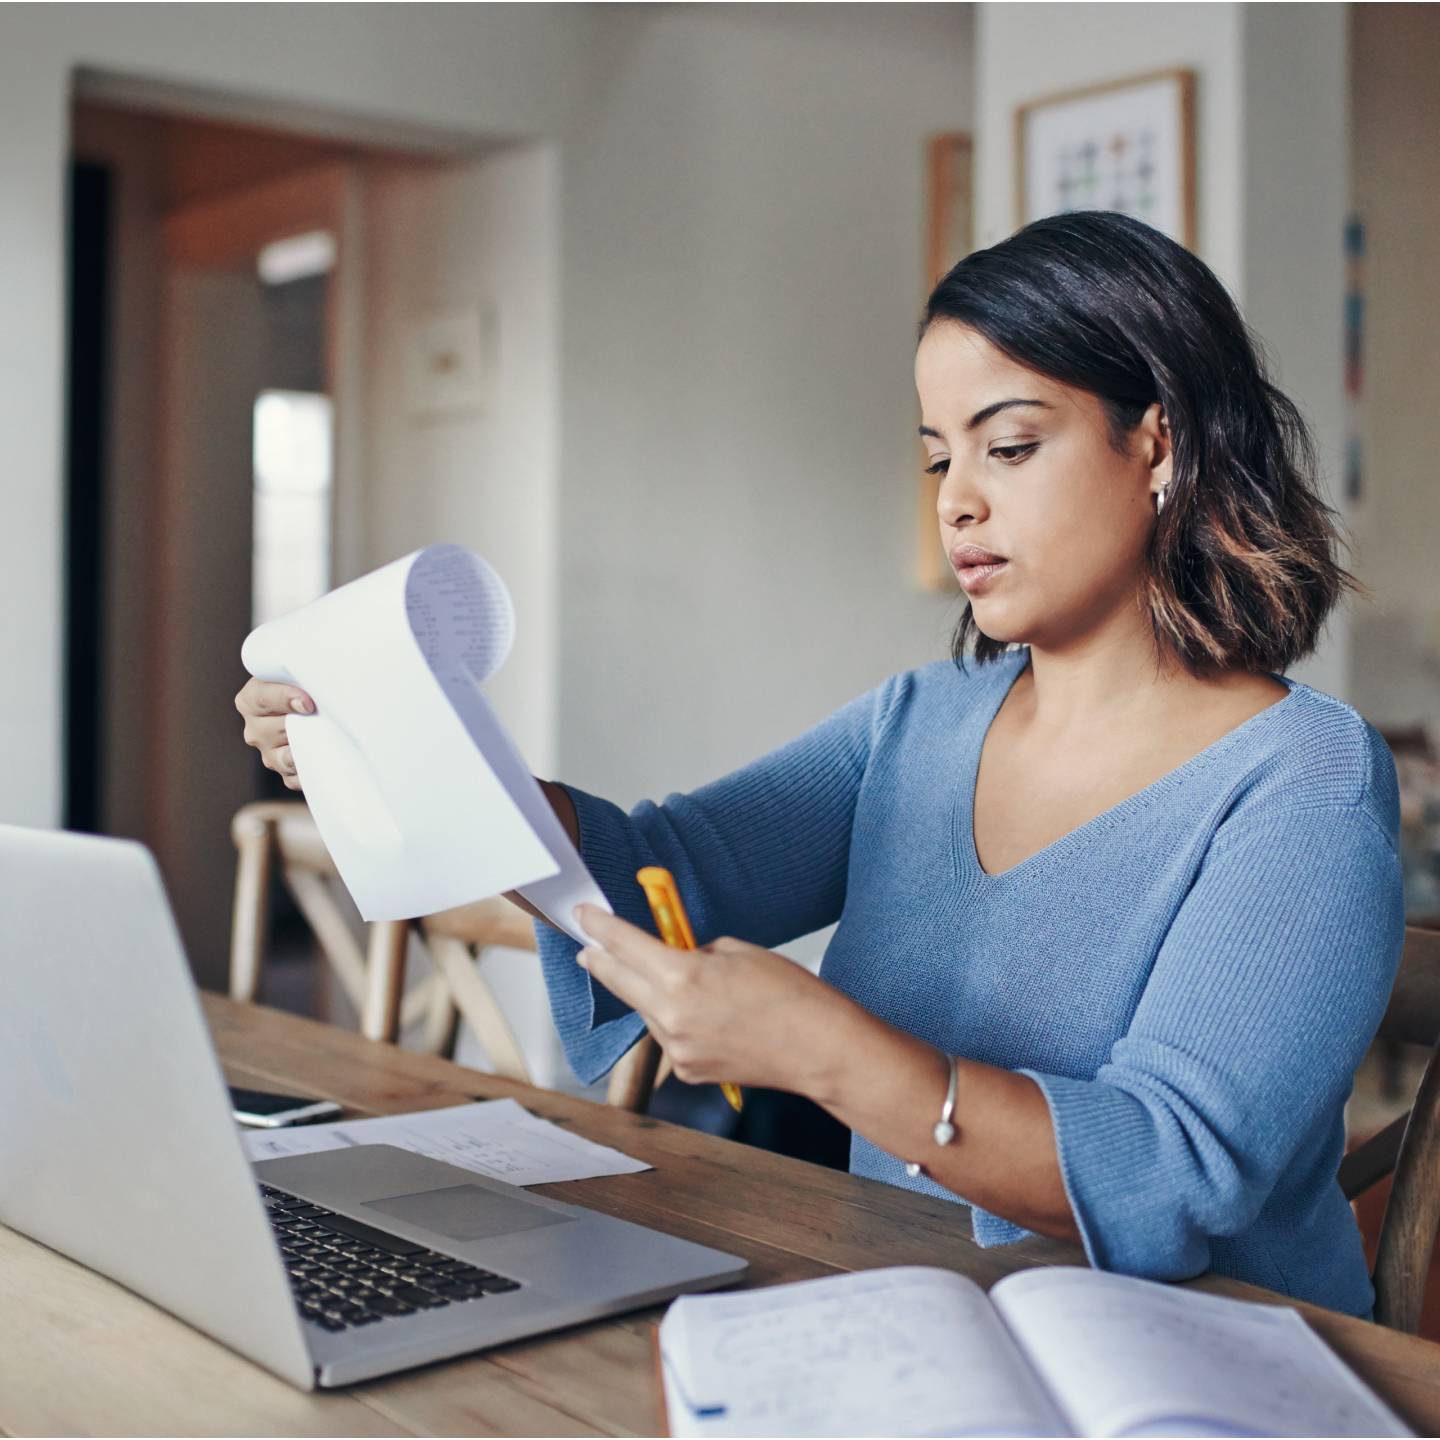 Una mujer trabaja en una computadora portátil y revisa documentos en papel.